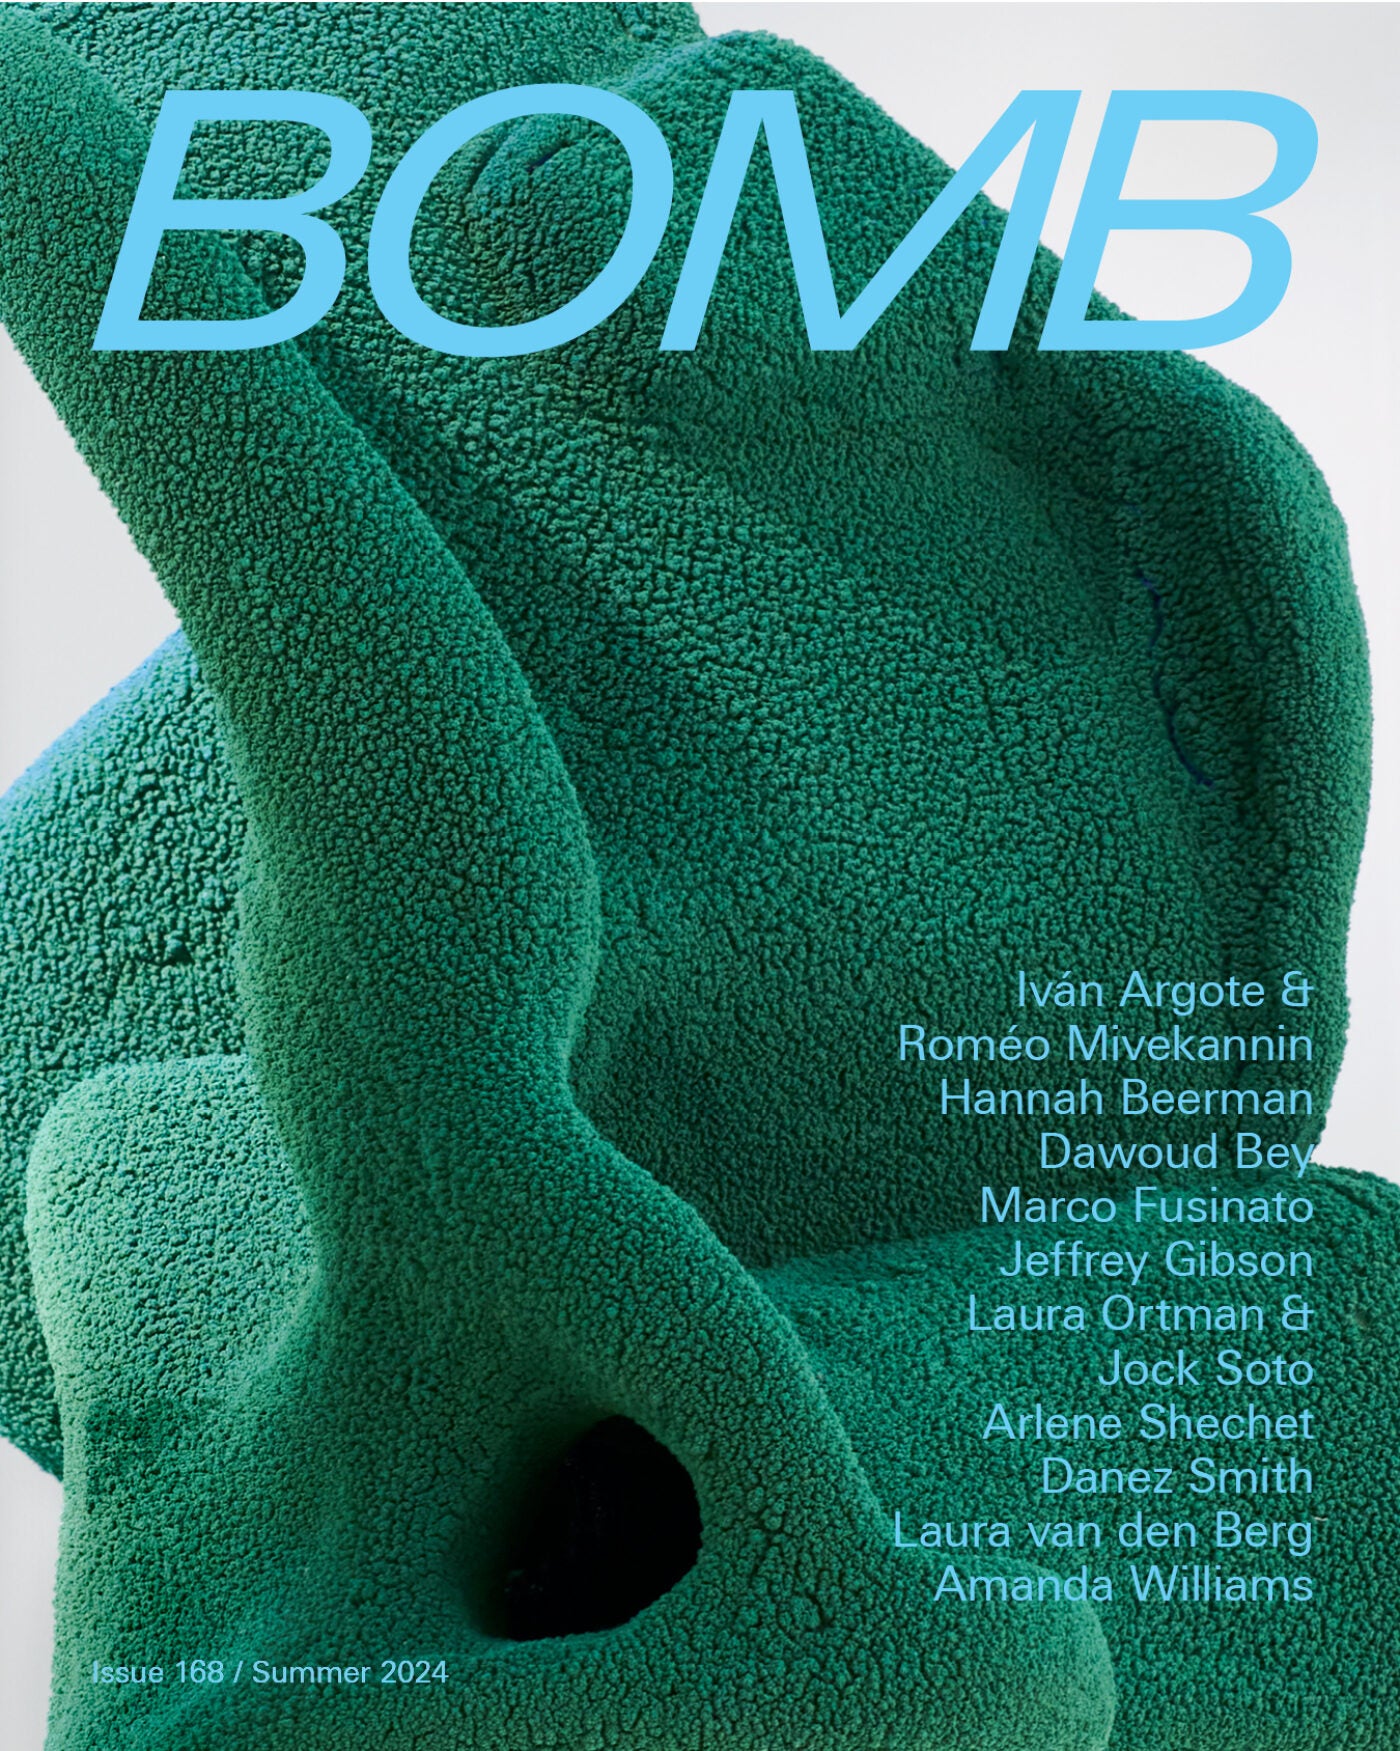 Bomb Magazine